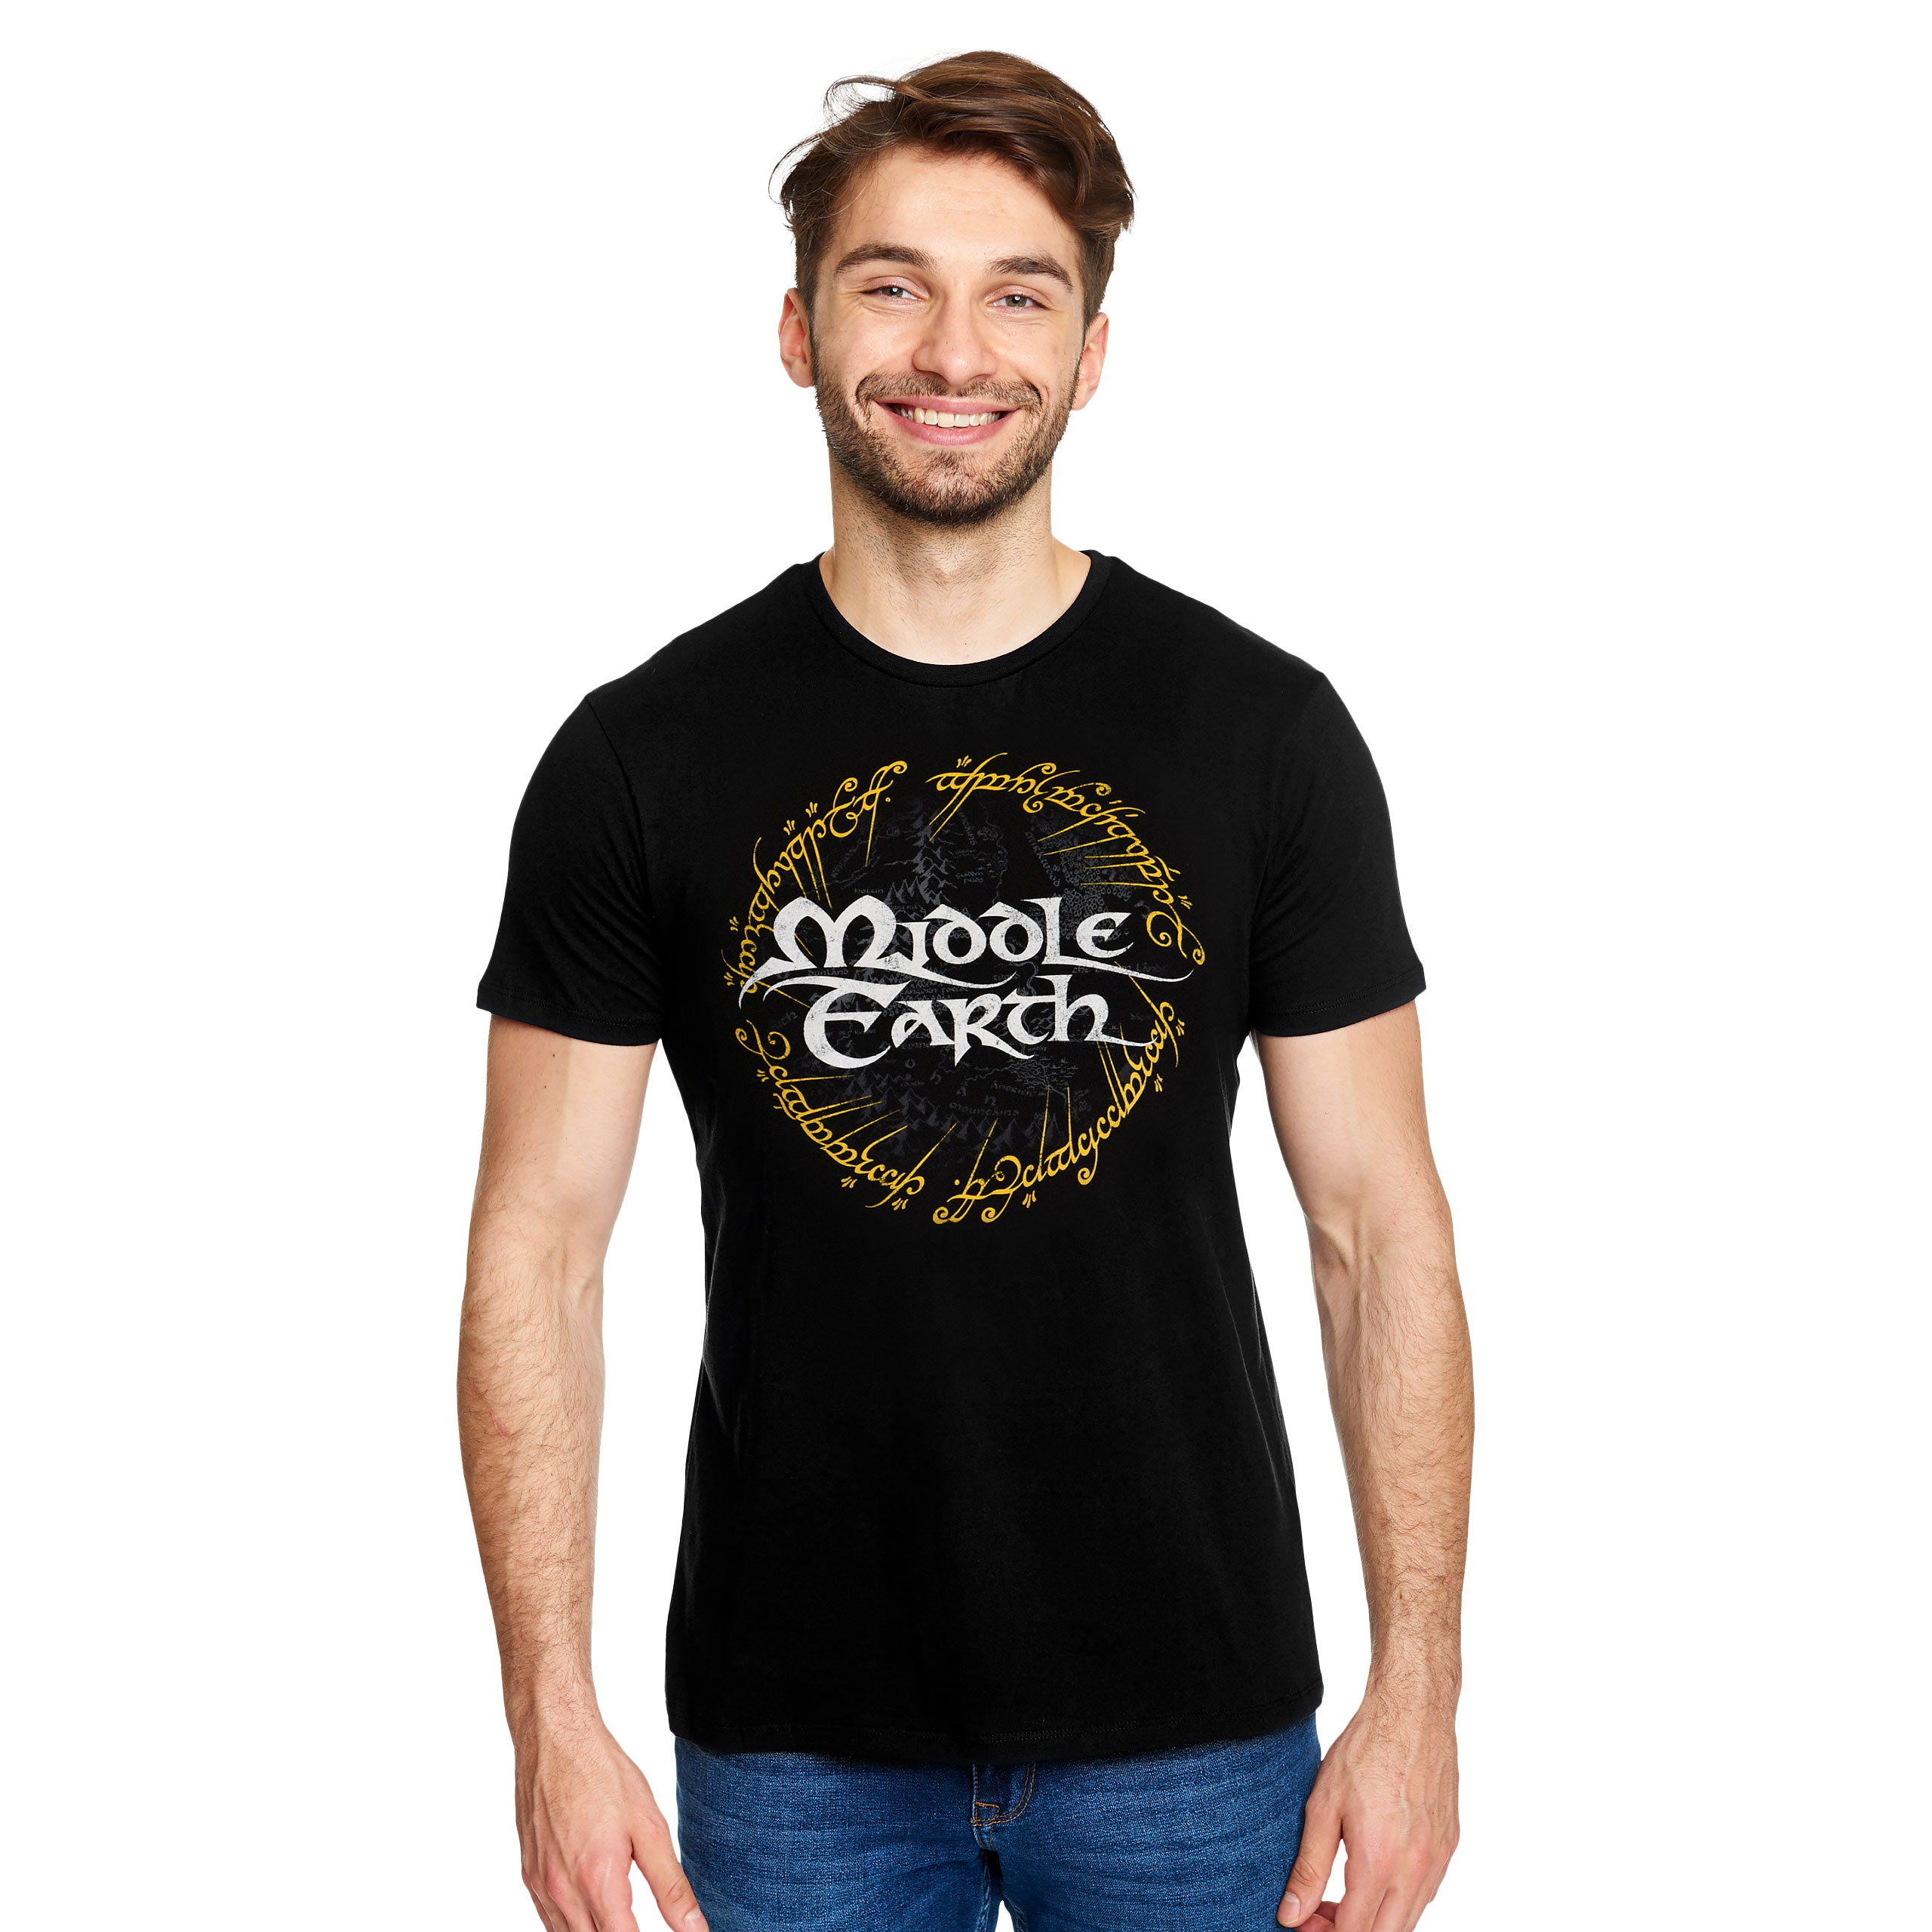 Heer der Ringen - Midden-aarde T-shirt zwart